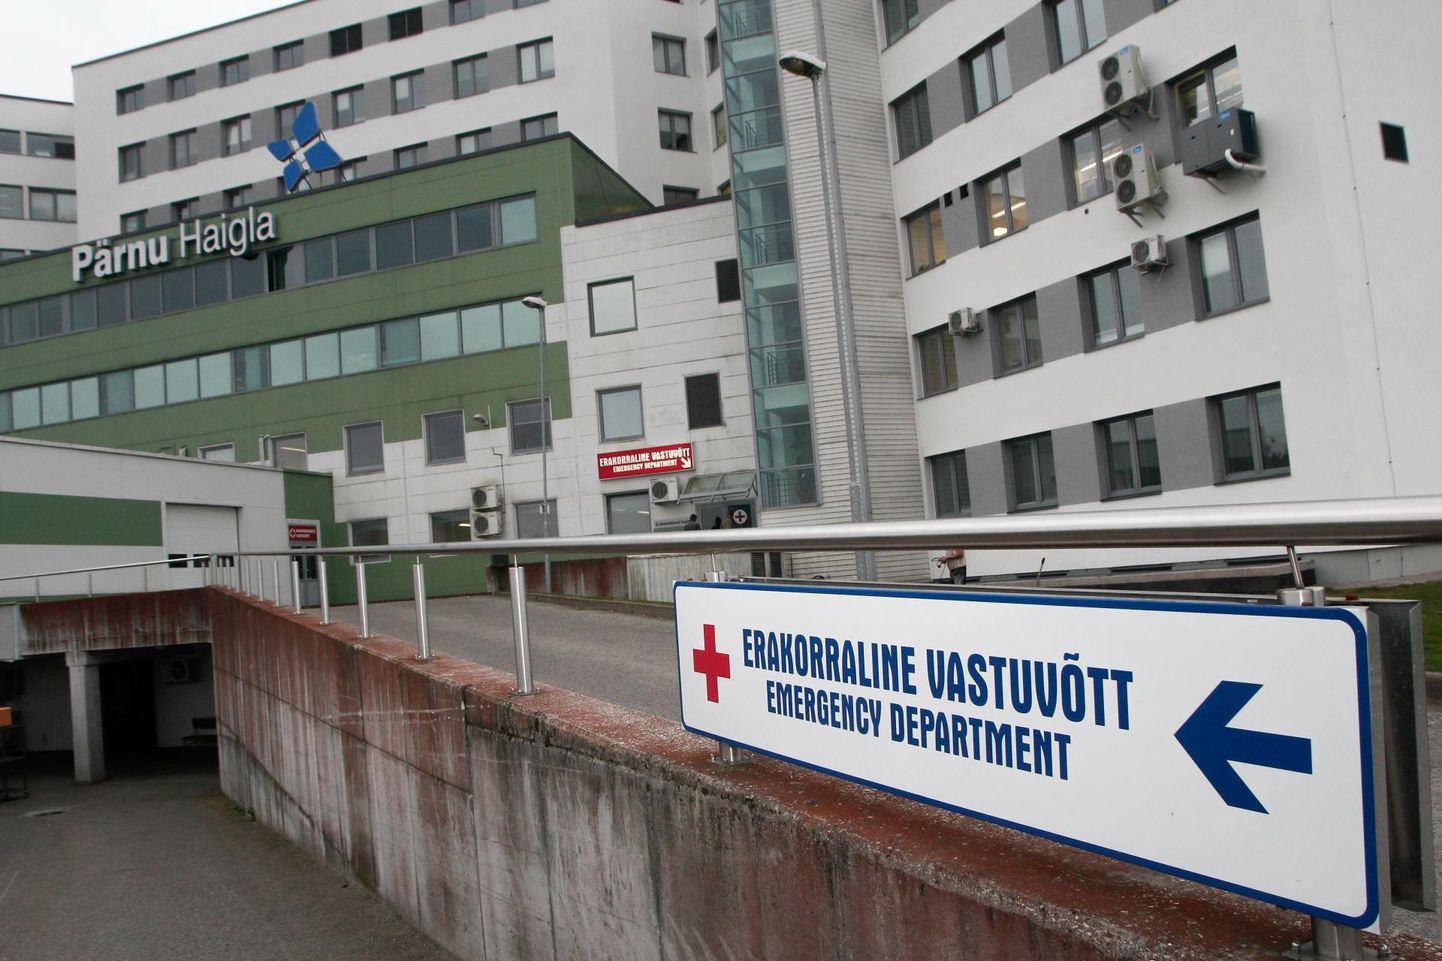 Naisega Pärnu haigla erakorralise meditsiini osakonnas tegelnud arst sai soovitusi, kuidas patsientidega paremini suhelda.